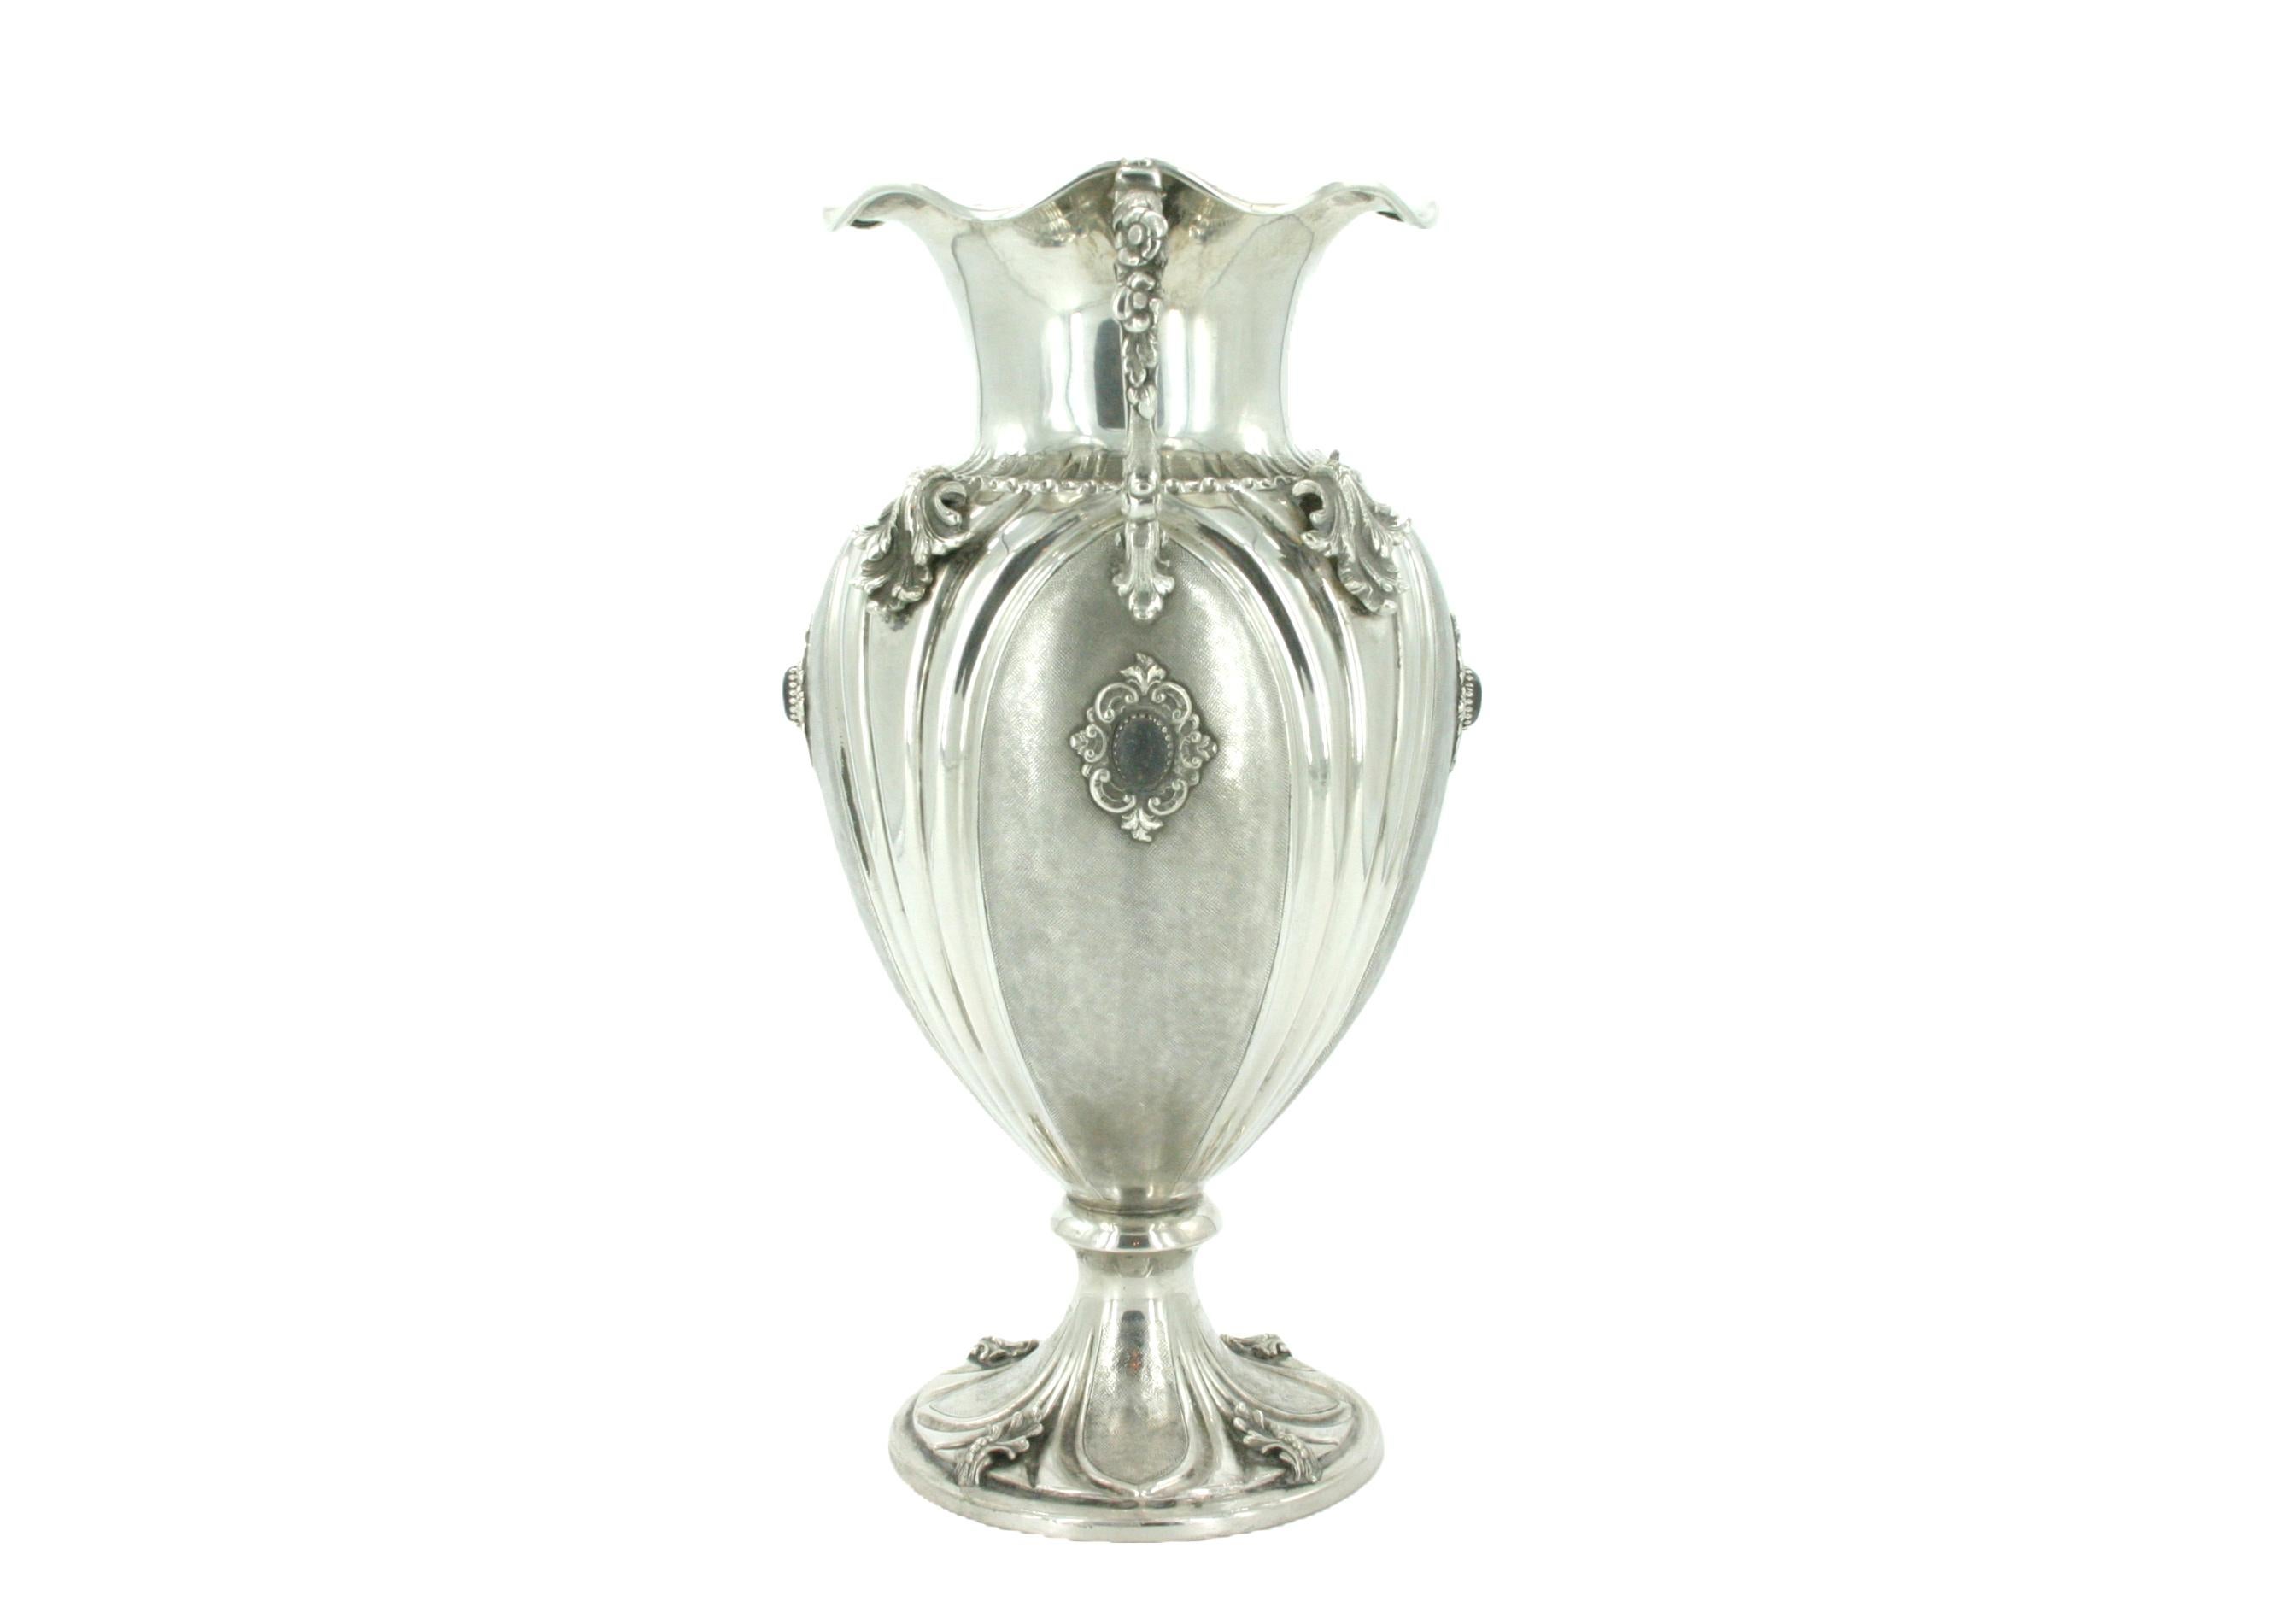 Vase décoratif en argent sterling italien du 19e siècle, avec deux poignées latérales et des détails de conception extérieure. Le vase présente un corps finement ciselé avec des motifs feuillagés appliqués et des pierres semi-précieuses. Le vase est